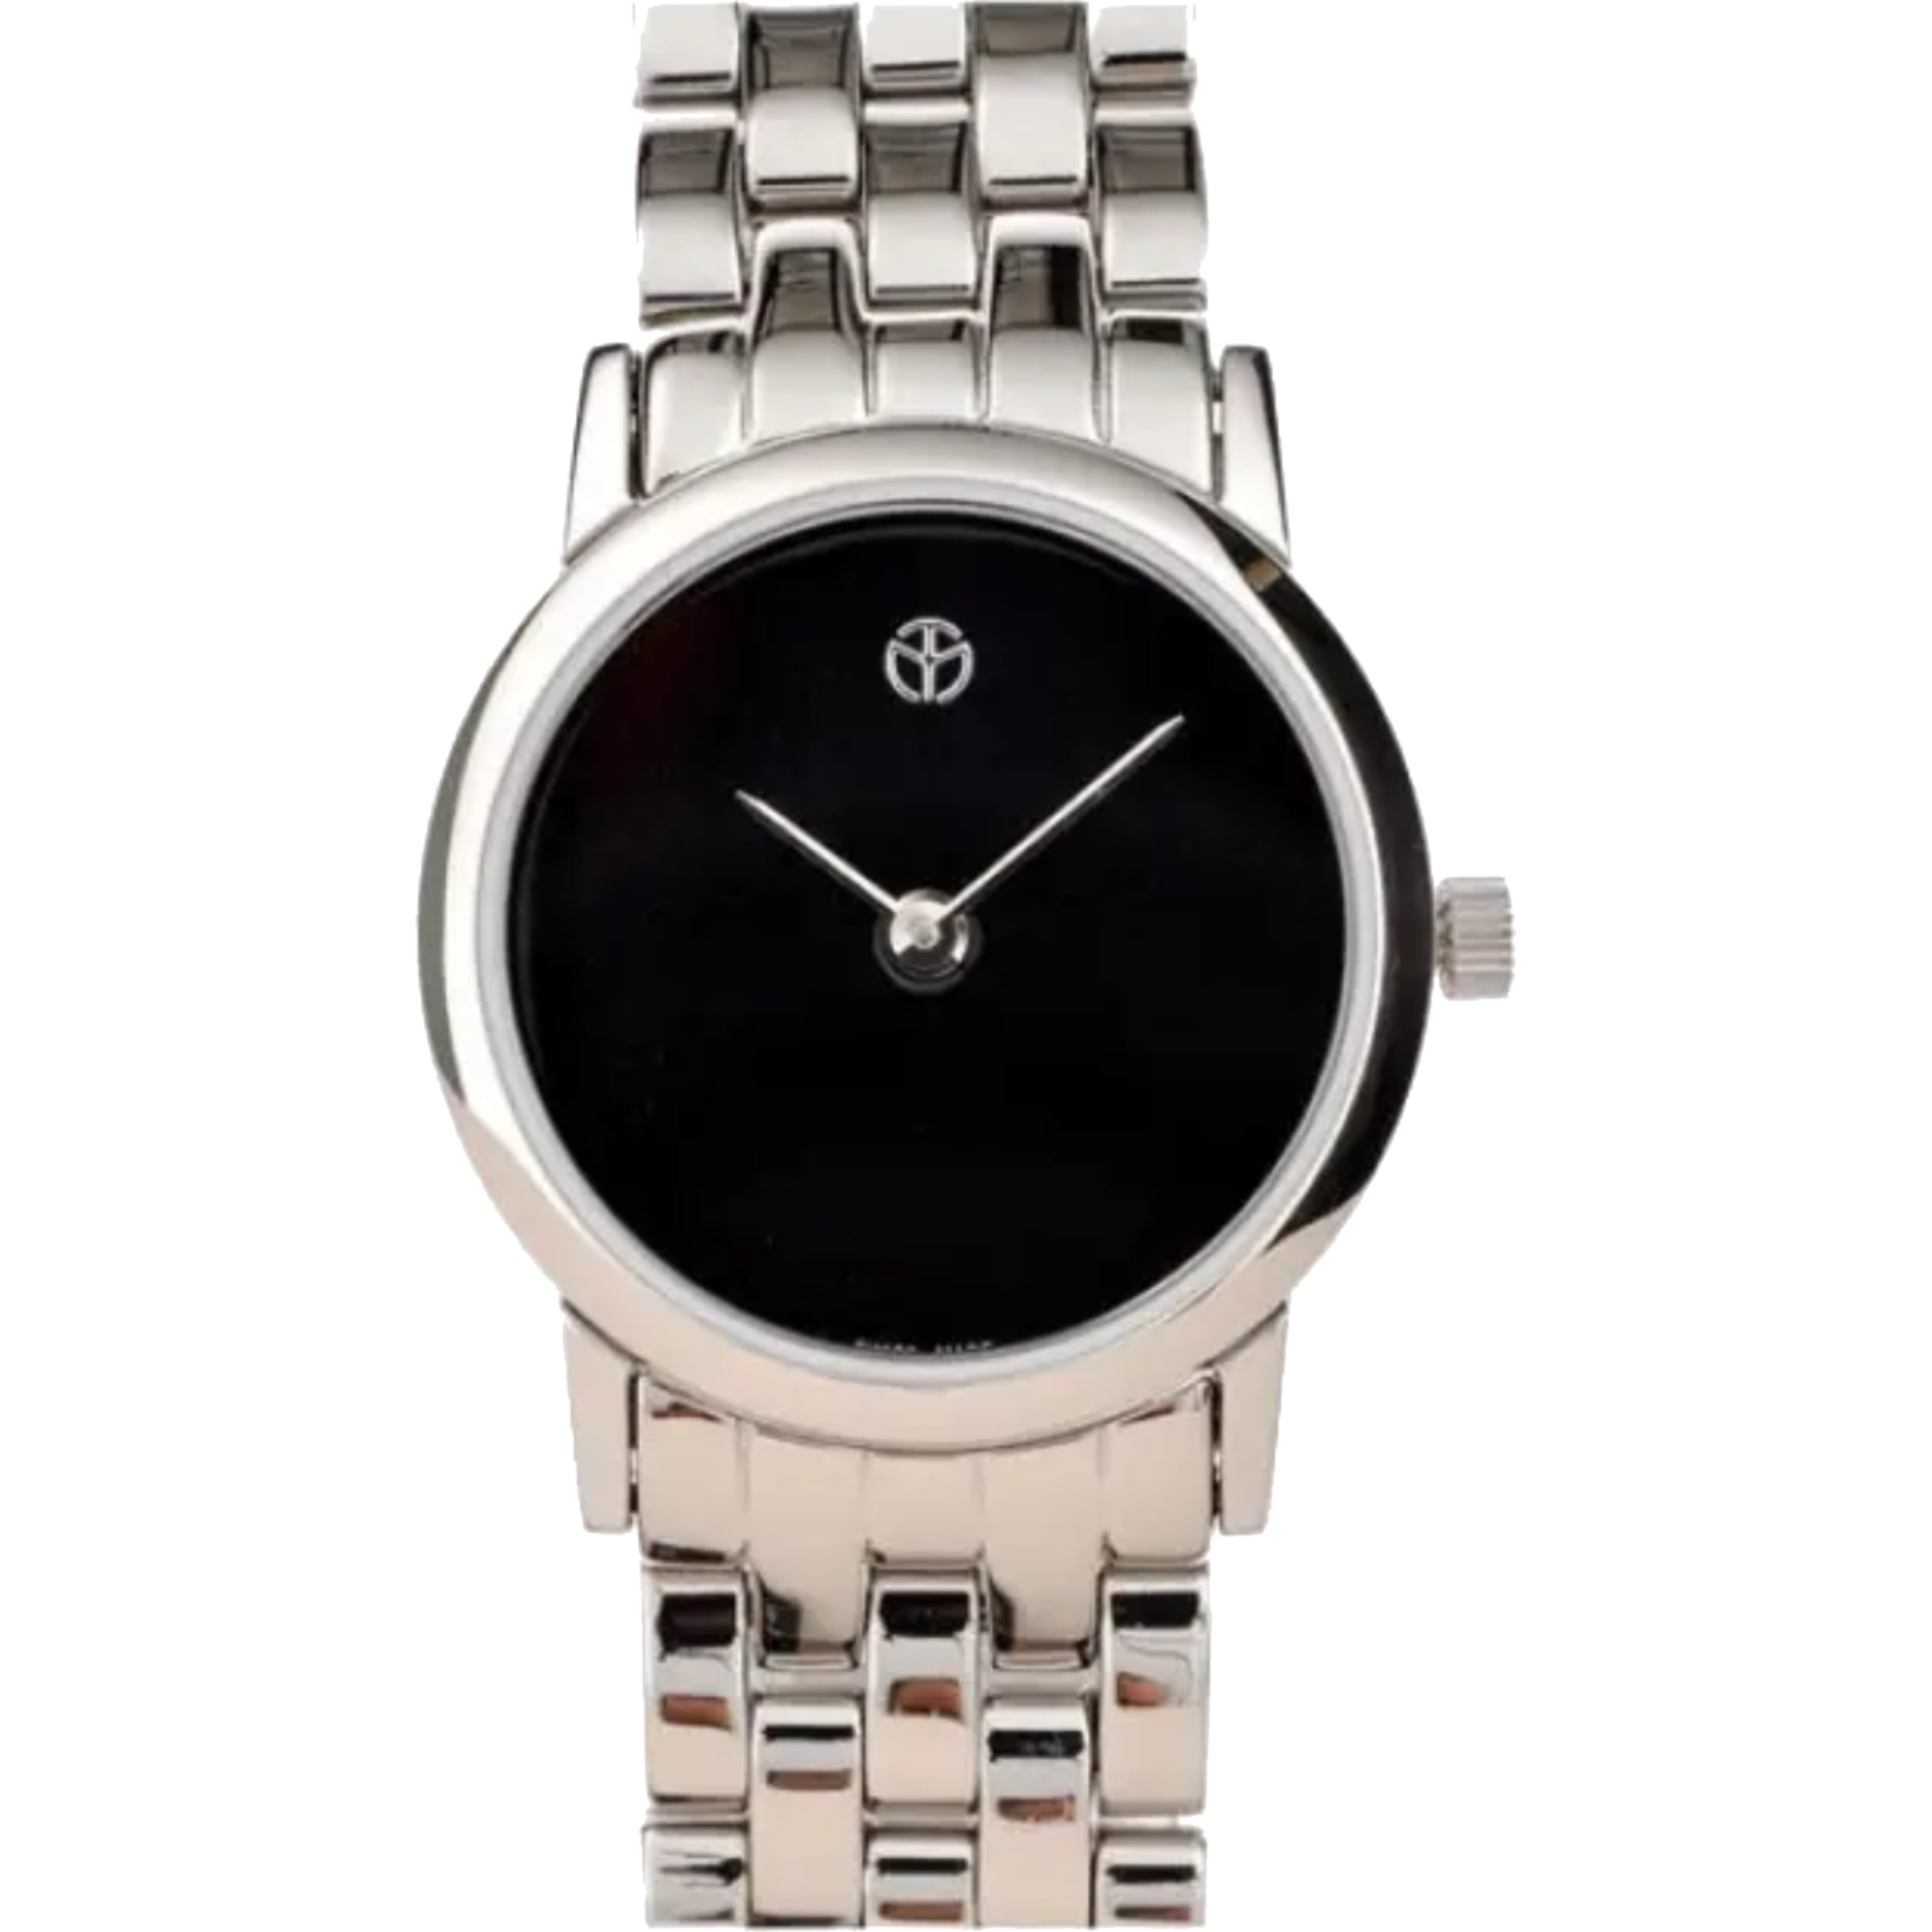 שעון יד לגבר/לאשה Mathey Tissot D9315ANMI 24mm צבע כסף/שחור/זכוכית ספיר - אחריות לשנה ע"י היבואן